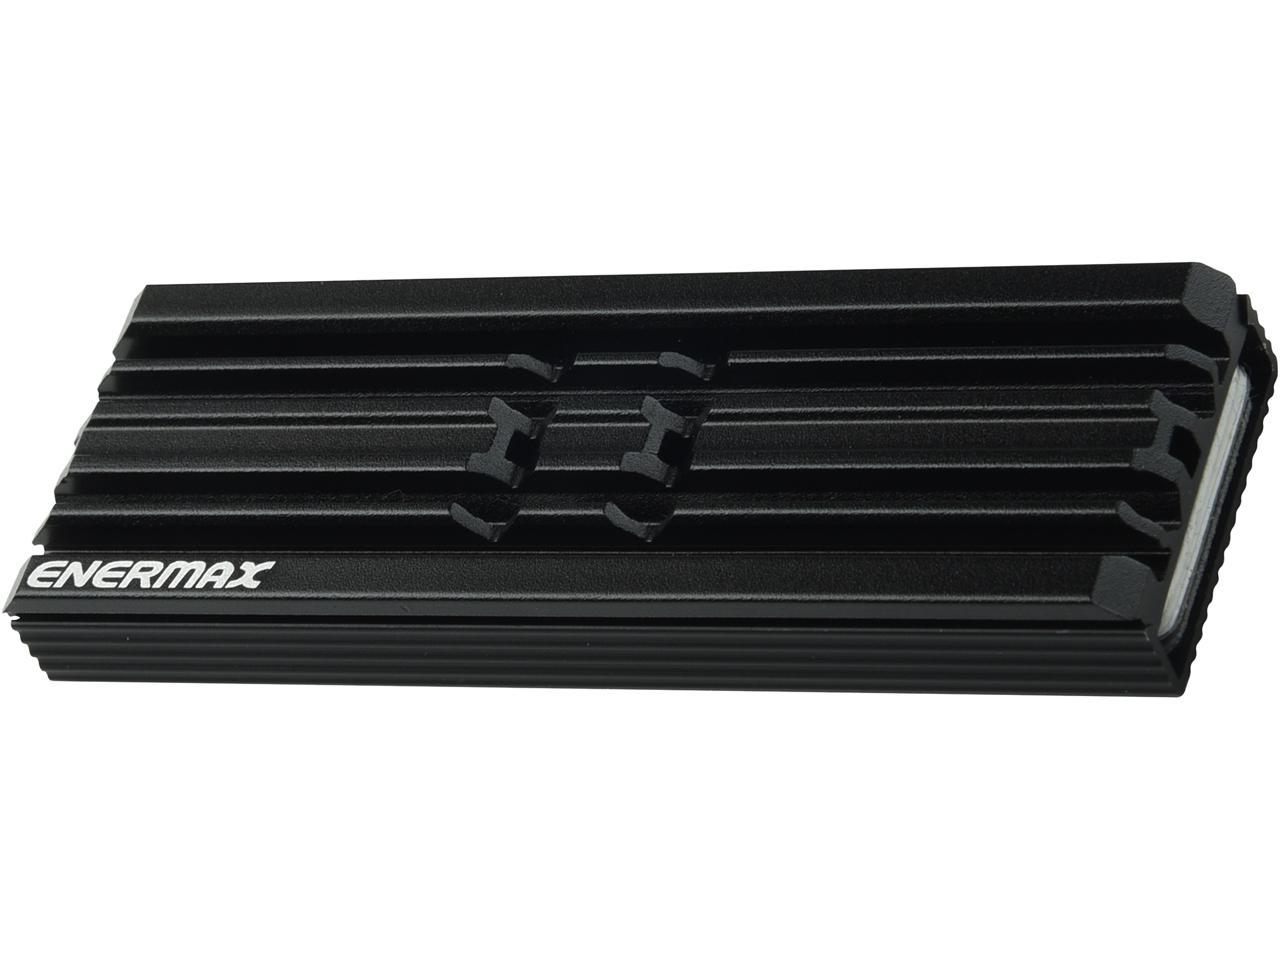 Enermax M.2 2280 NVMe SSD Heatsink, Double-Sided Heat Sink (AR) $2